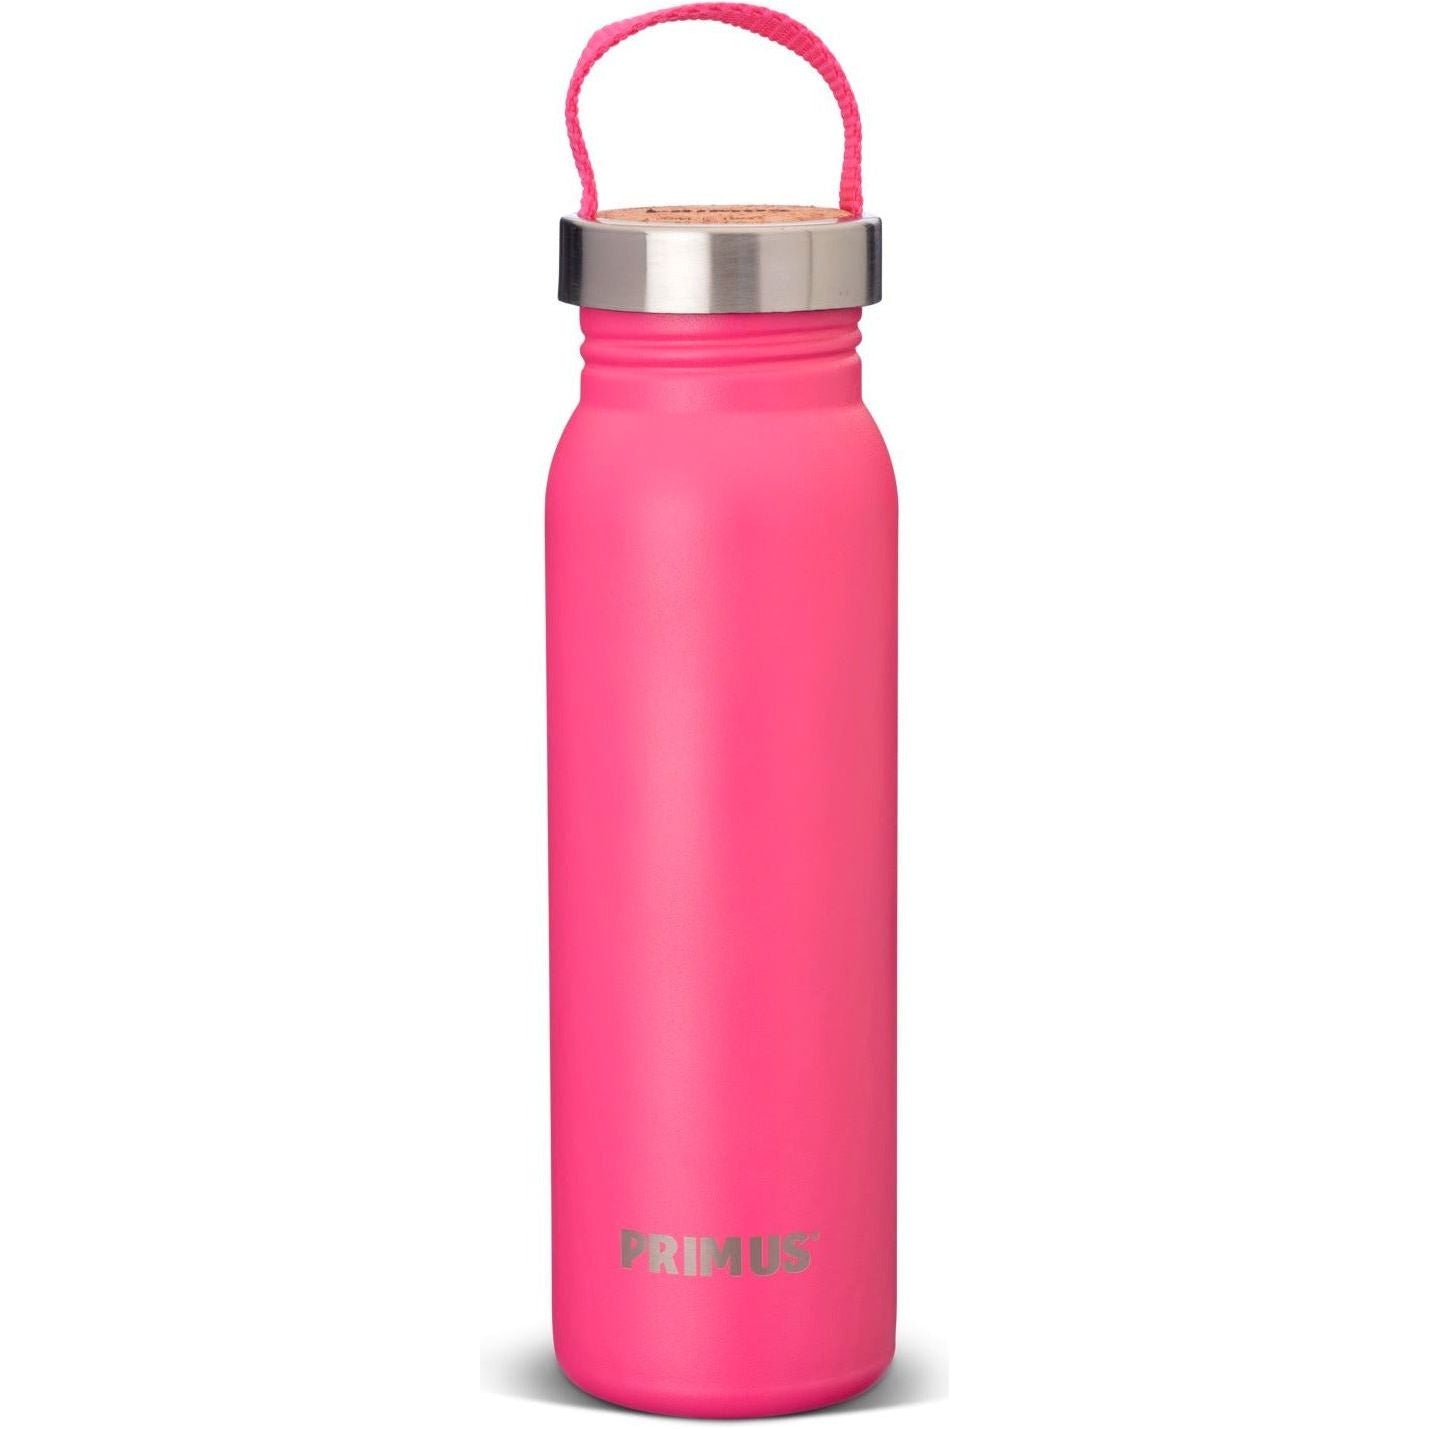 Klunken Bottle 0.7L Getränke Primus pink 